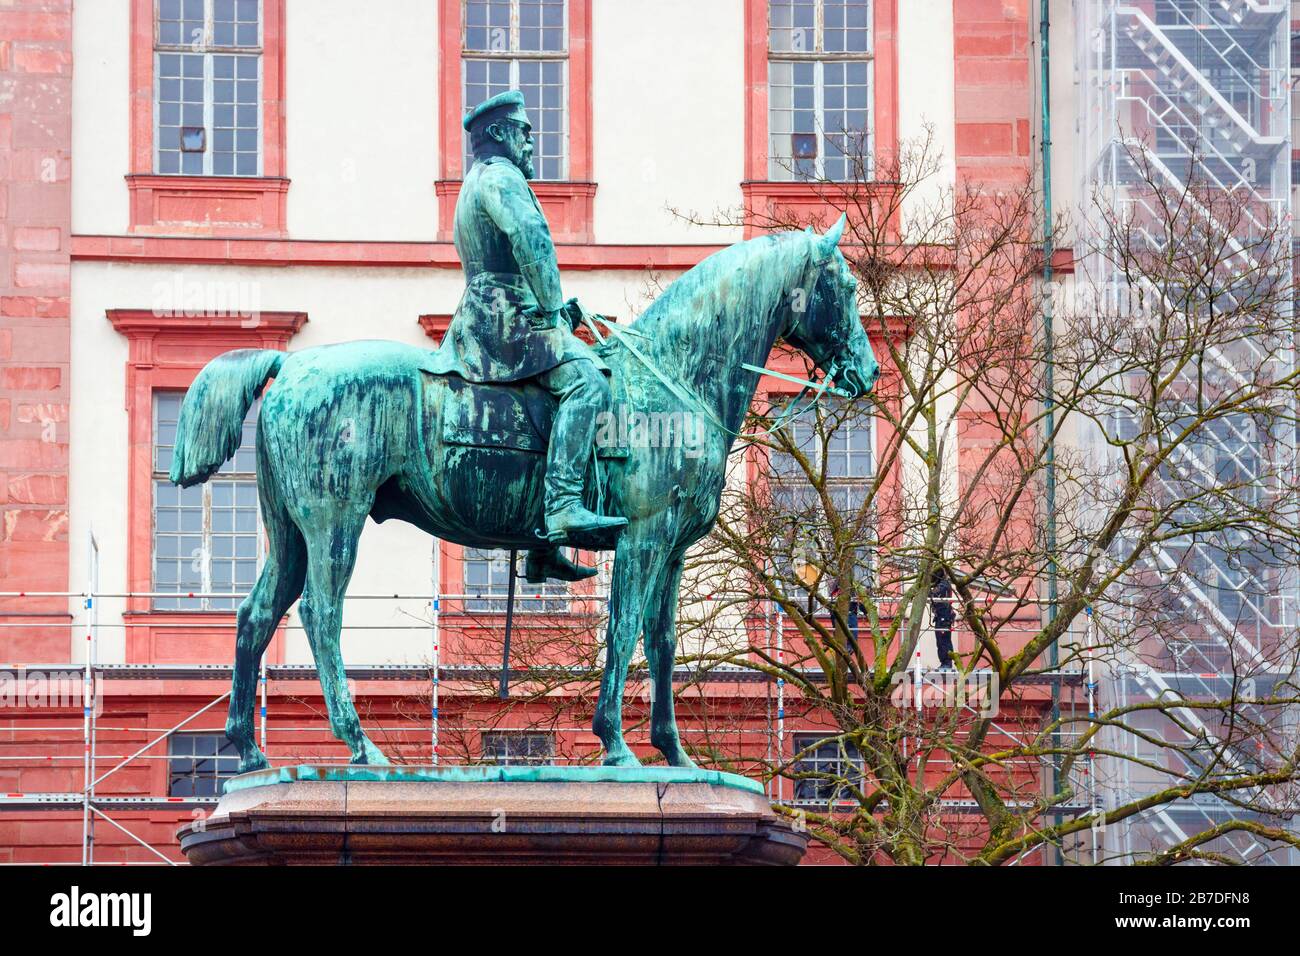 Statua in bronzo raffigurante il Luigi IV, Granduca d'Assia con il palazzo residenziale sullo sfondo. Darmstadt, Germania. Foto Stock